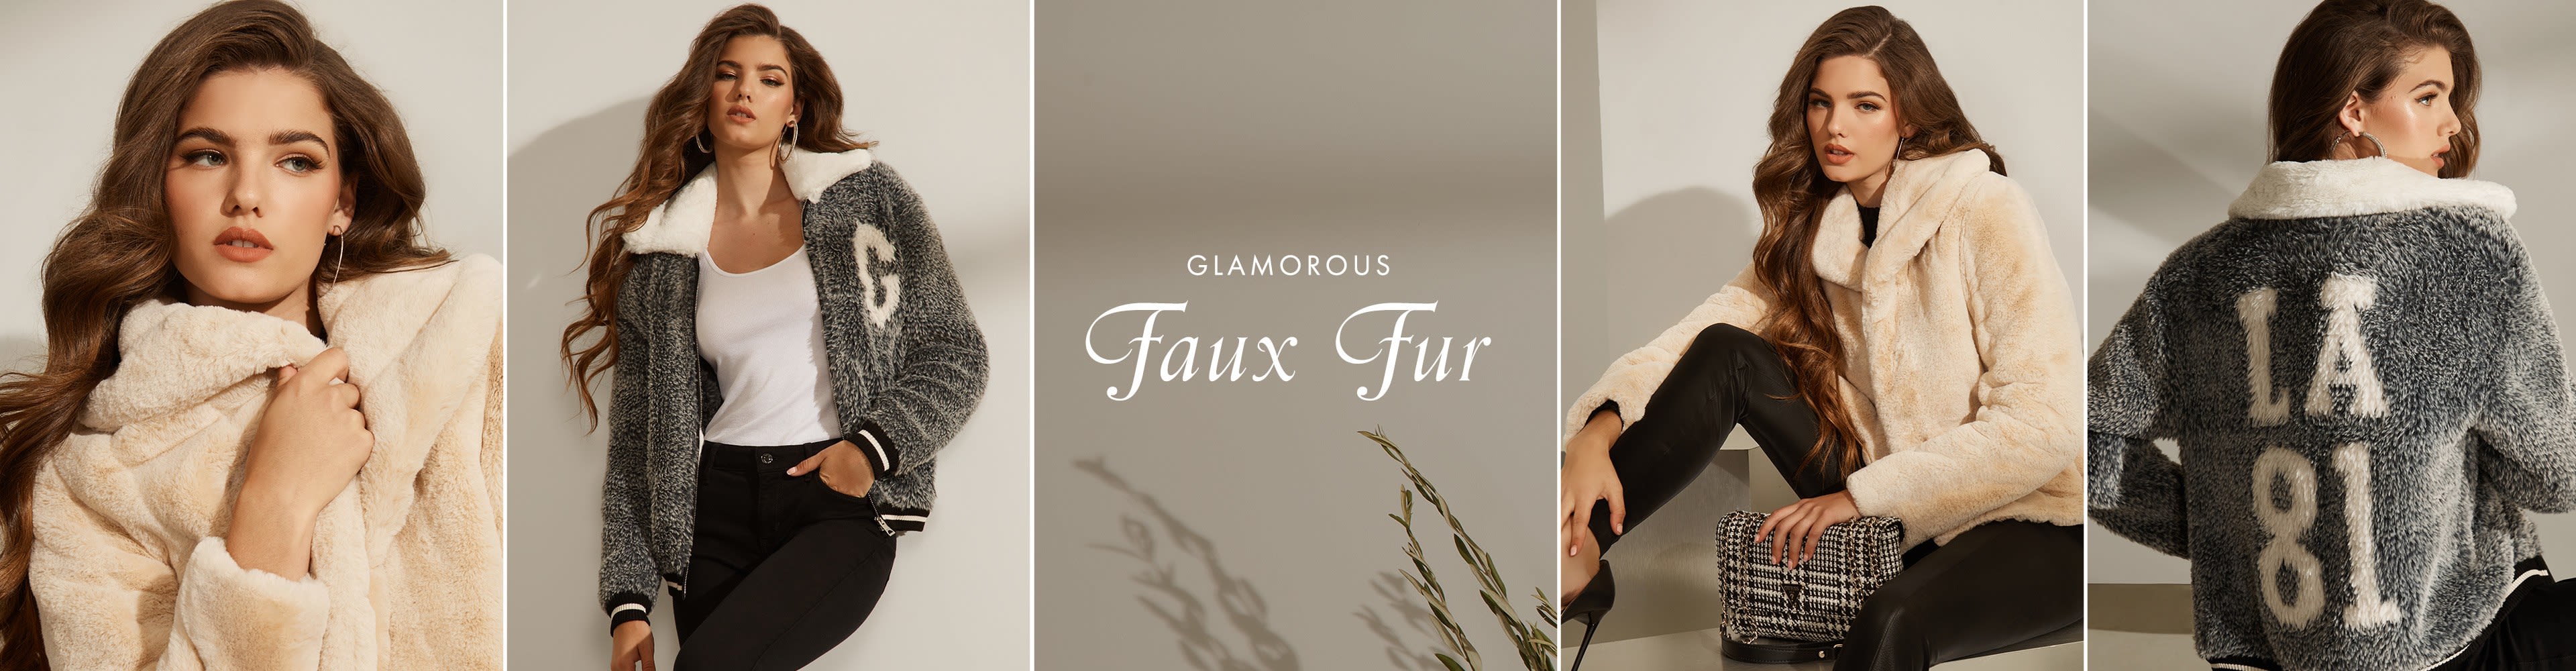 Faux fur jackets for women